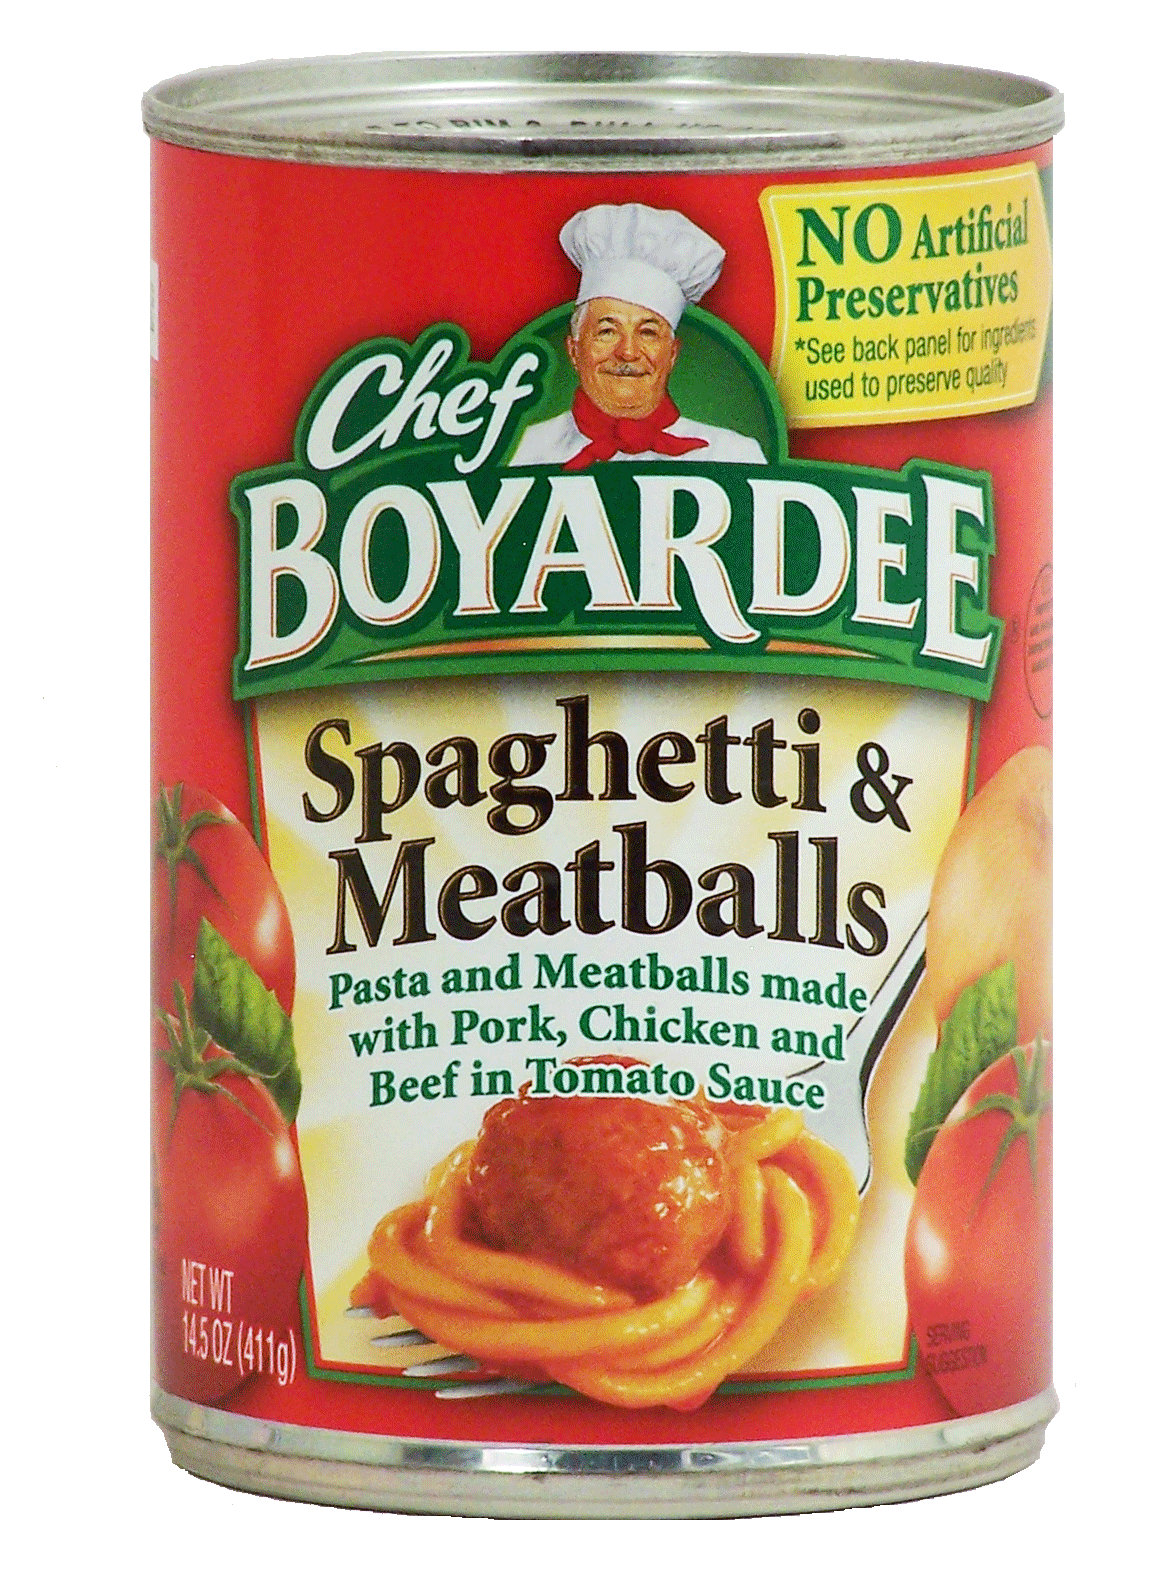 Chef Boyardee Spaghetti & Meatballs In Tomato Sauce Full-Size Picture